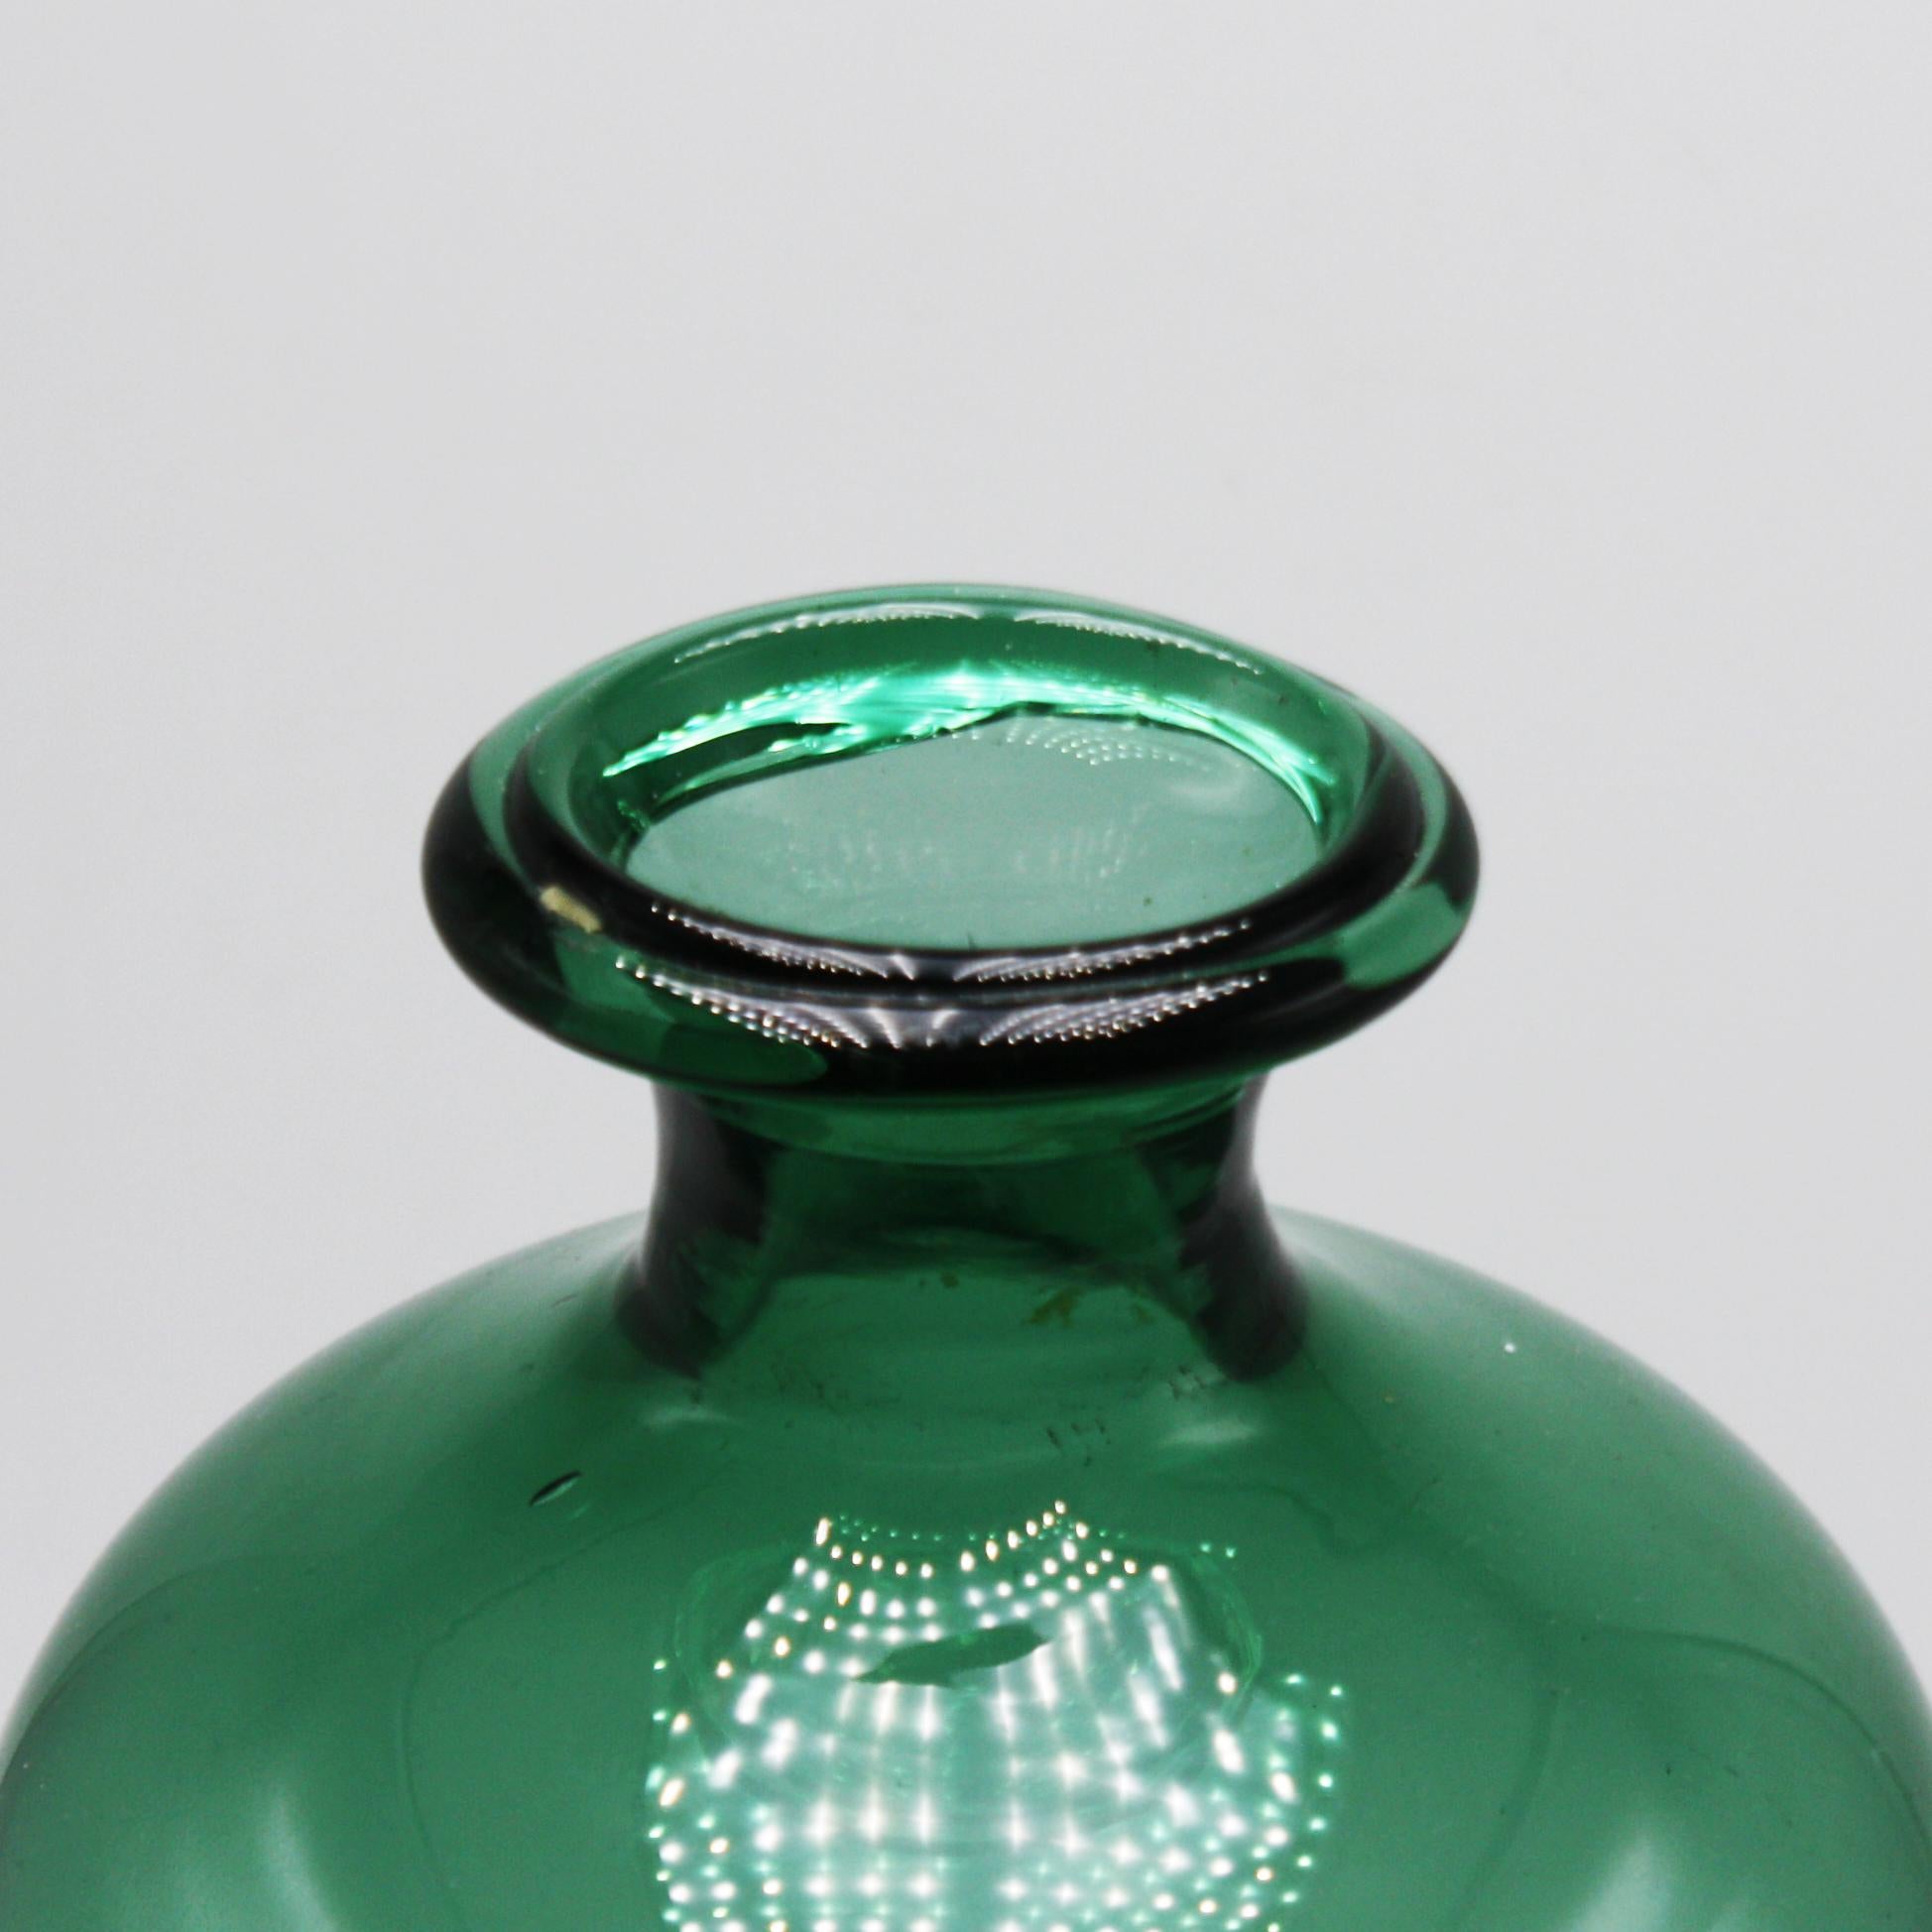 Green Empoli glass vase, circa 1960
Measures: 5 1/4